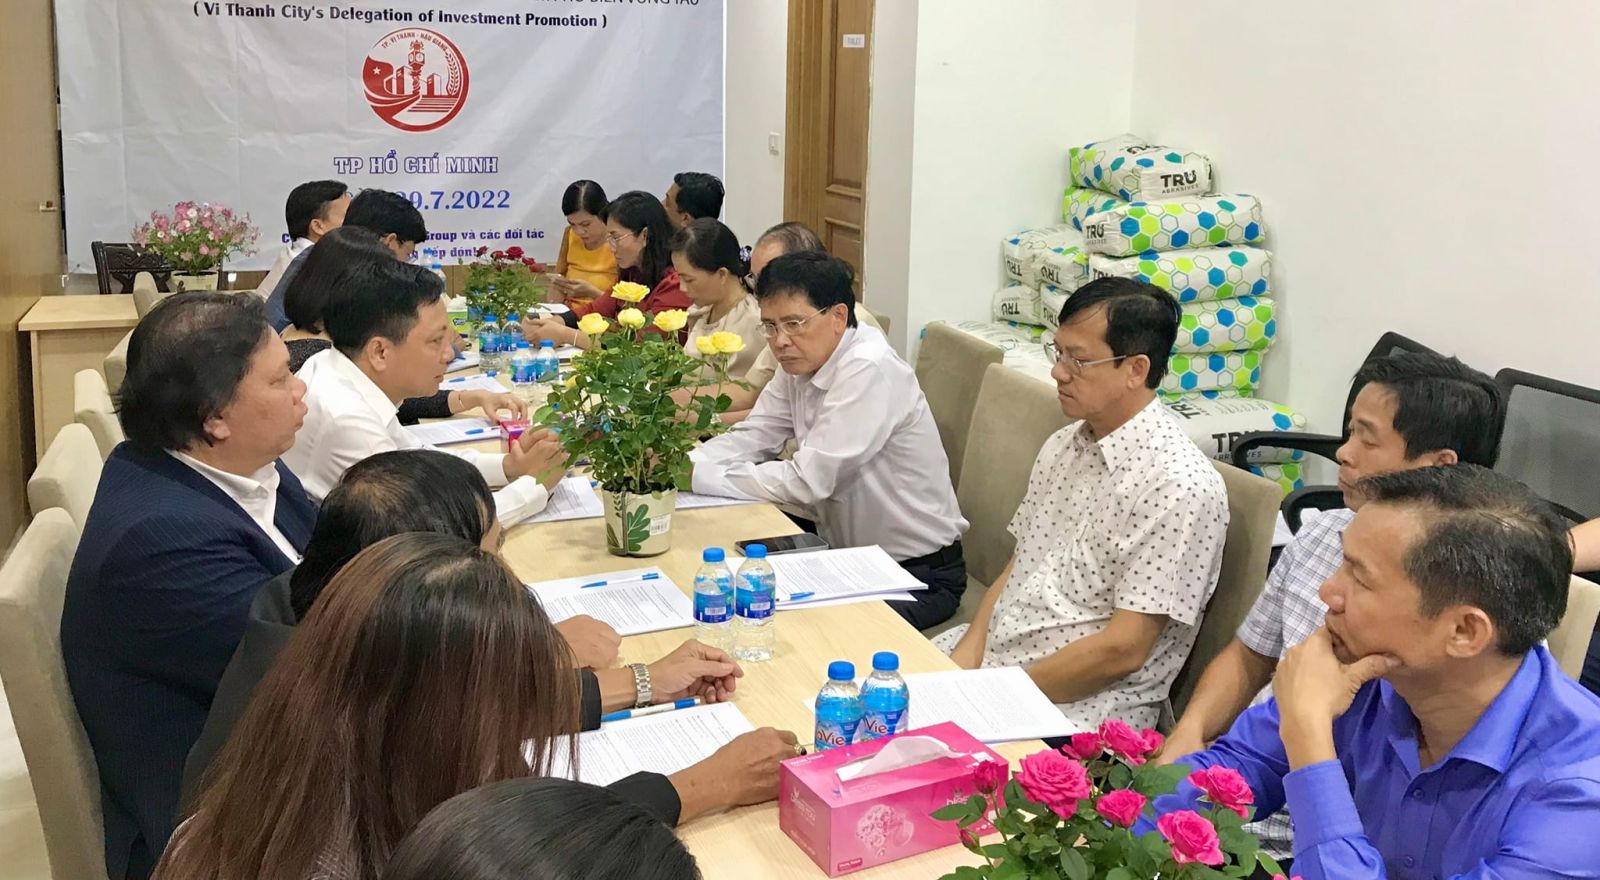 Thành phố Vị Thanh xúc tiến đầu tư tại Thành phố Hồ Chí Minh